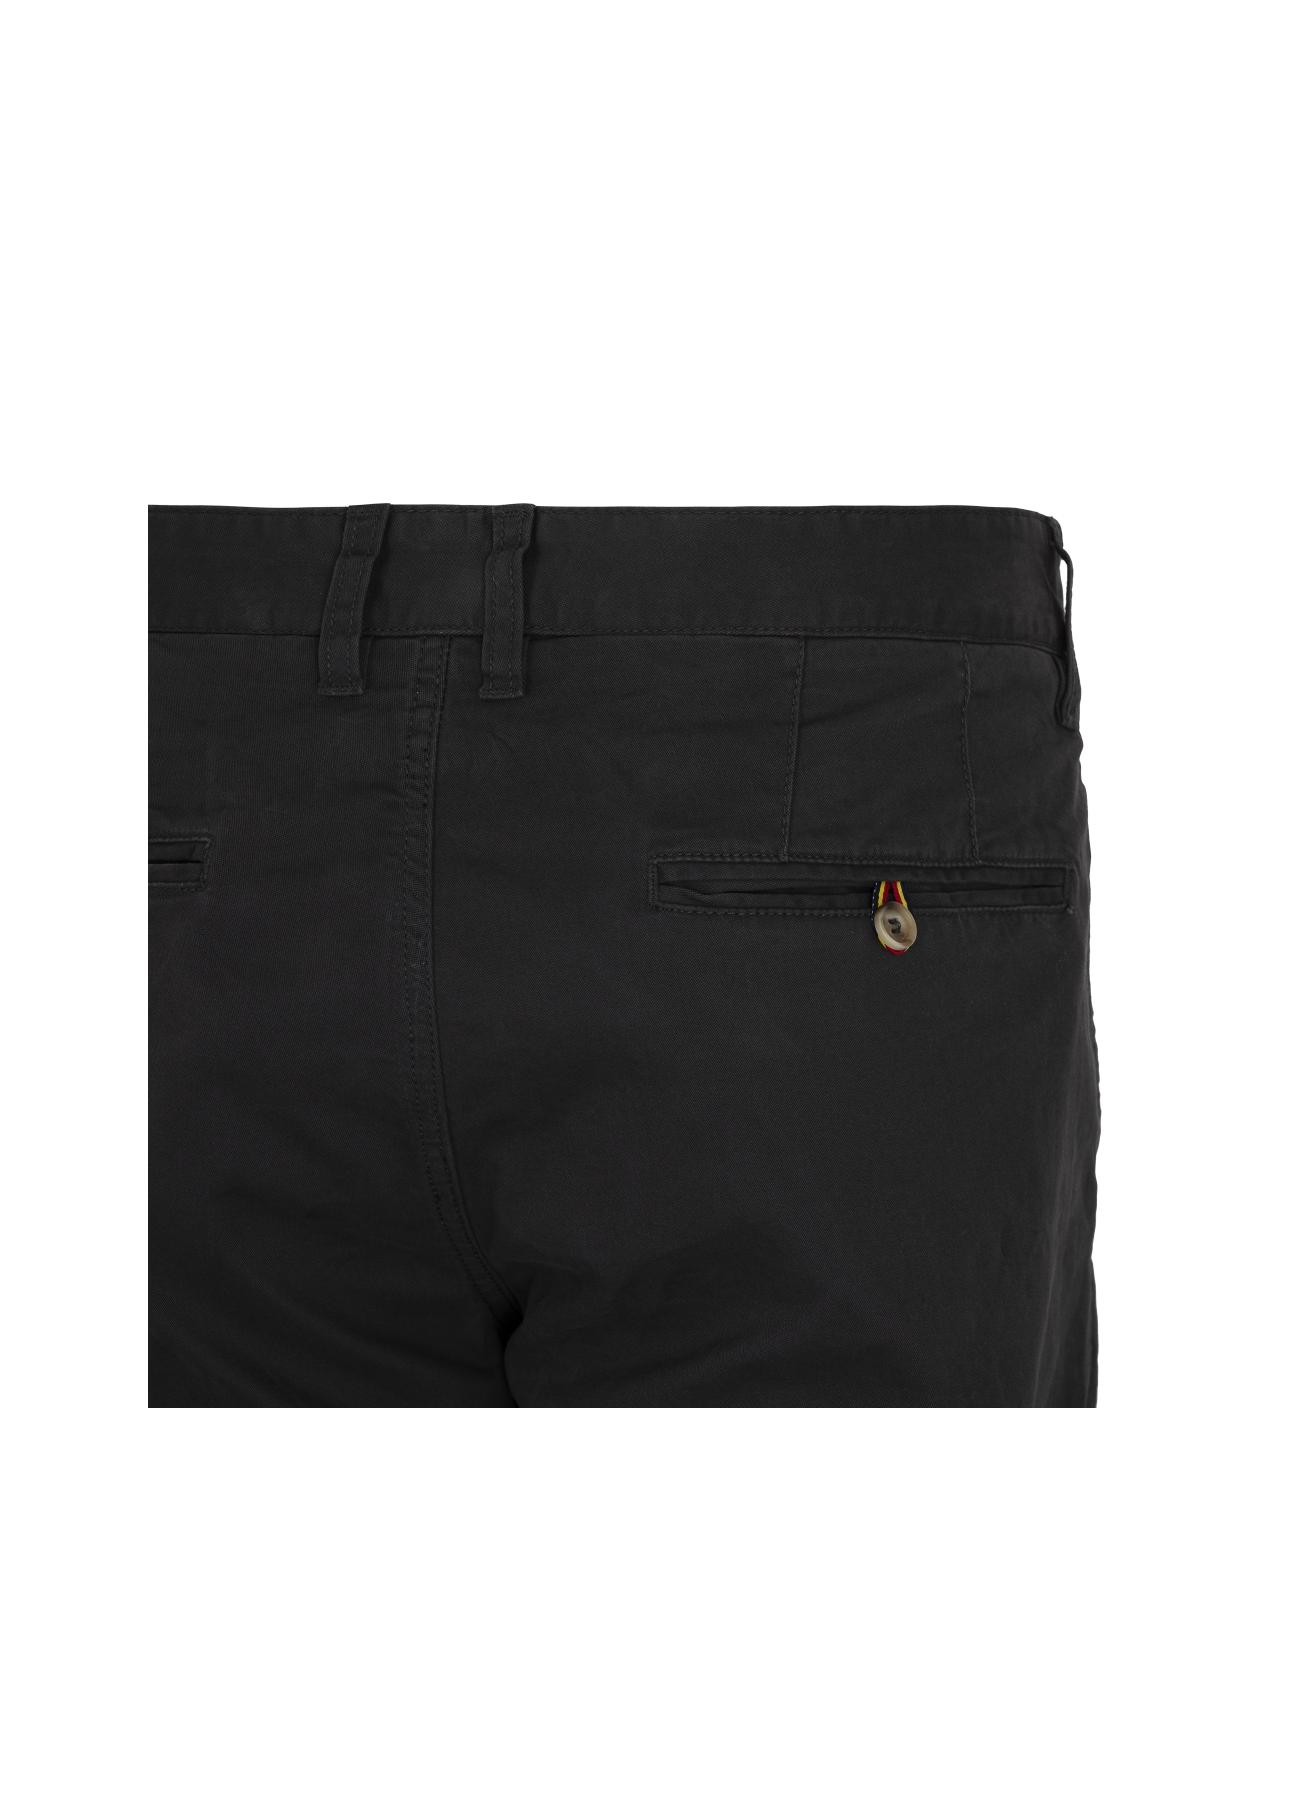 Spodnie męskie SPOMT-0045-91(W20)